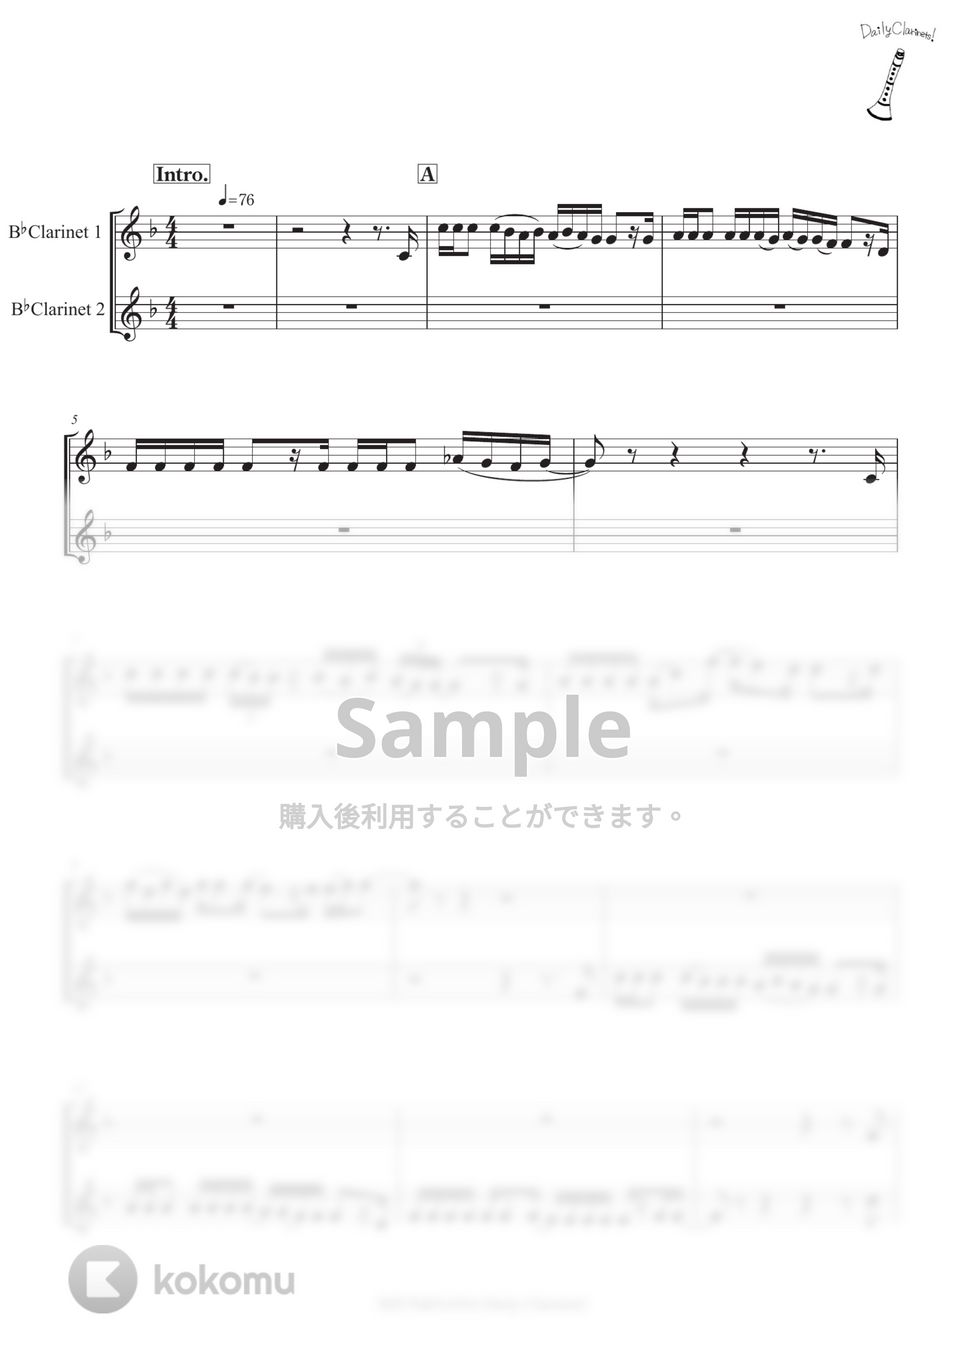 あいみょん（北村匠海「DISH//」） - 猫 (クラリネット二重奏) by SHUN&NANA Daily Clarinets!